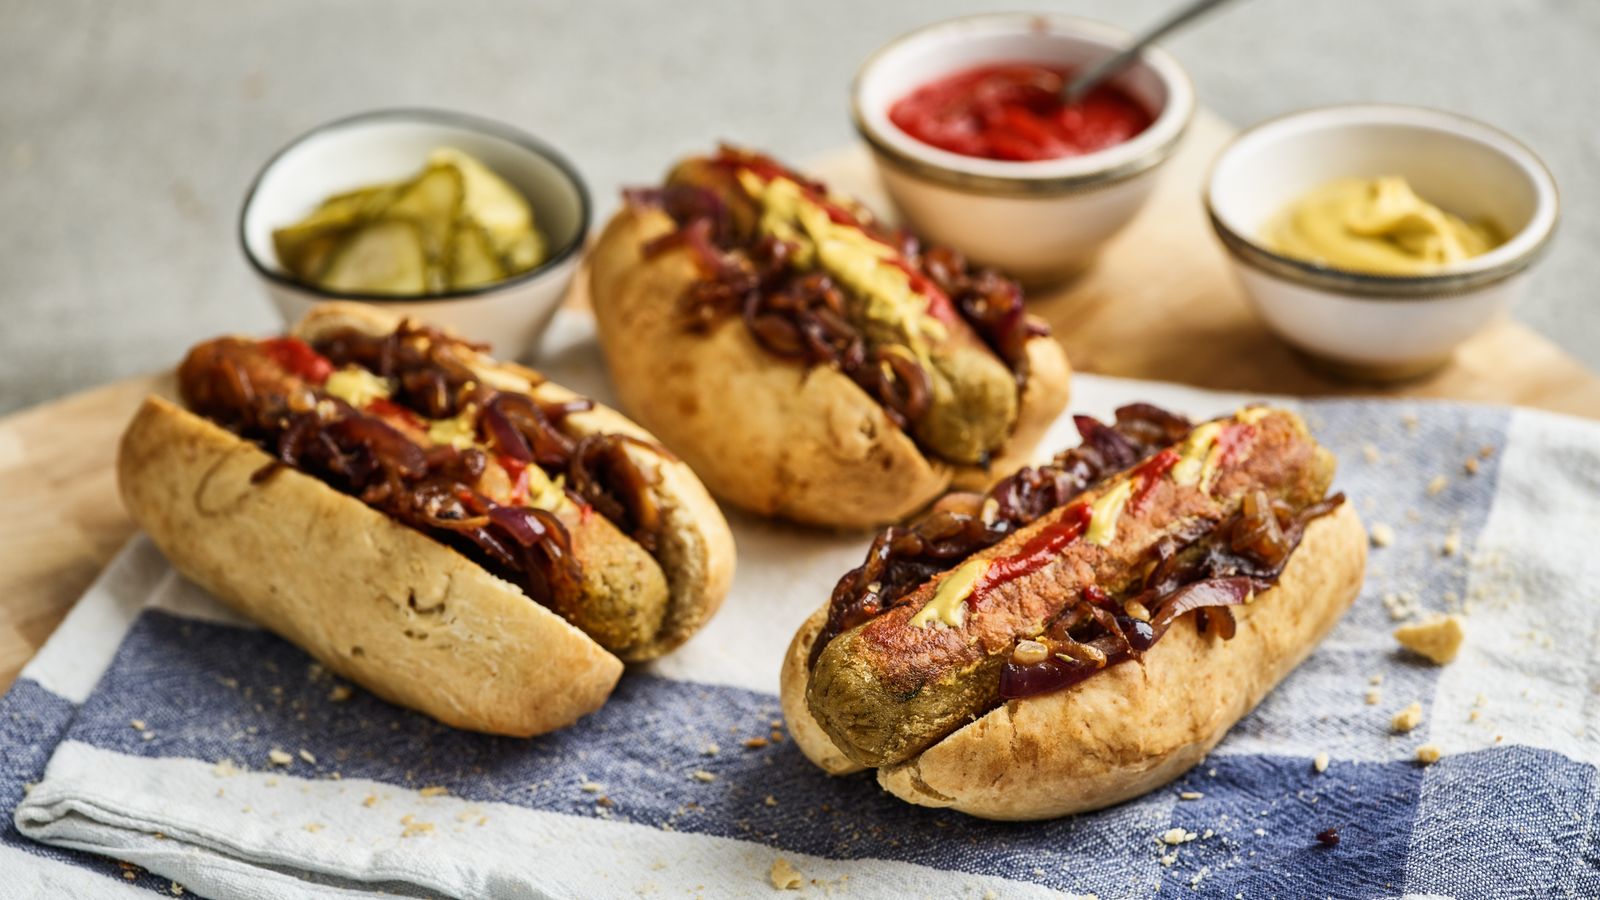 Hot Dogs hübsch serviert mit Saucen und Gürkchen